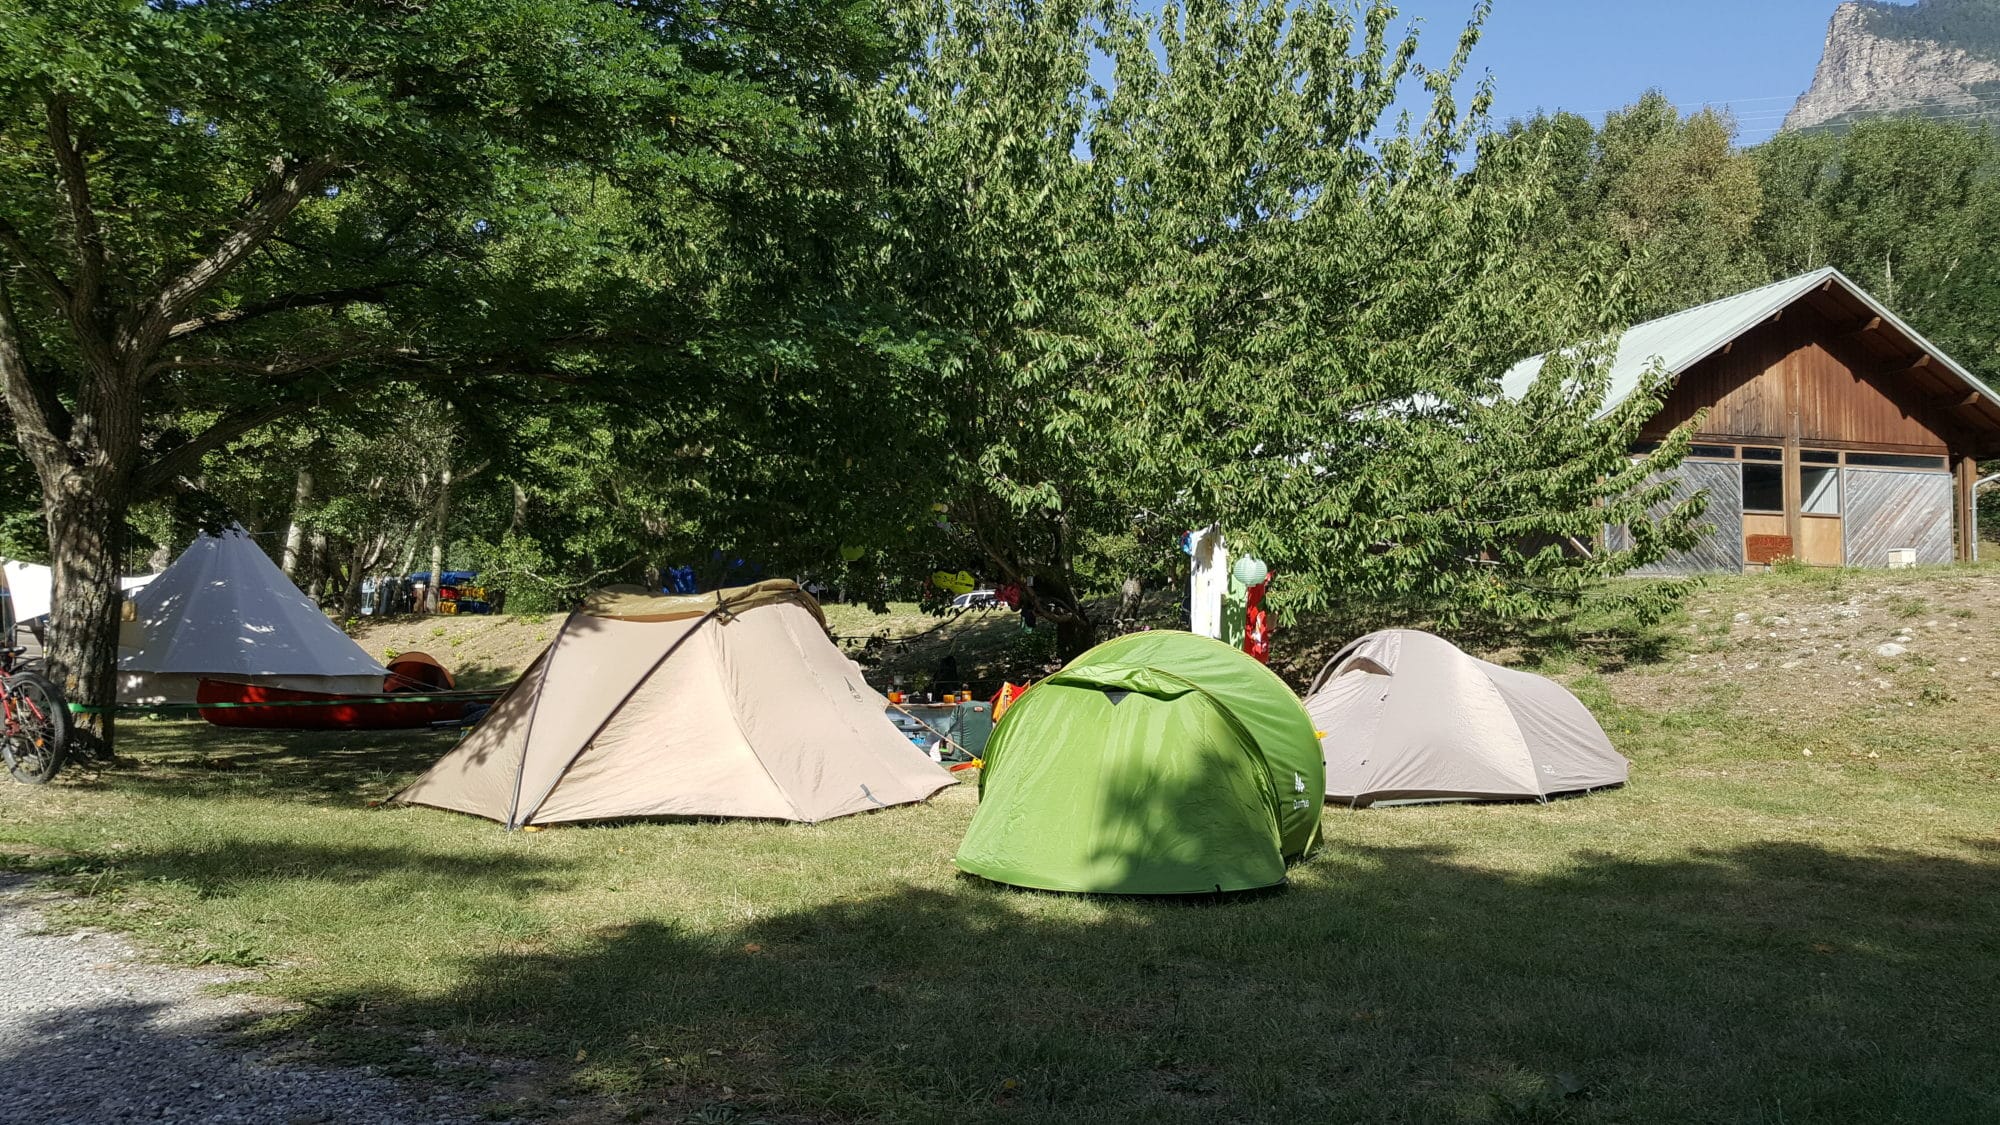 20170802 102224 001 - Emplacement de Tente, caravane ou camping-car